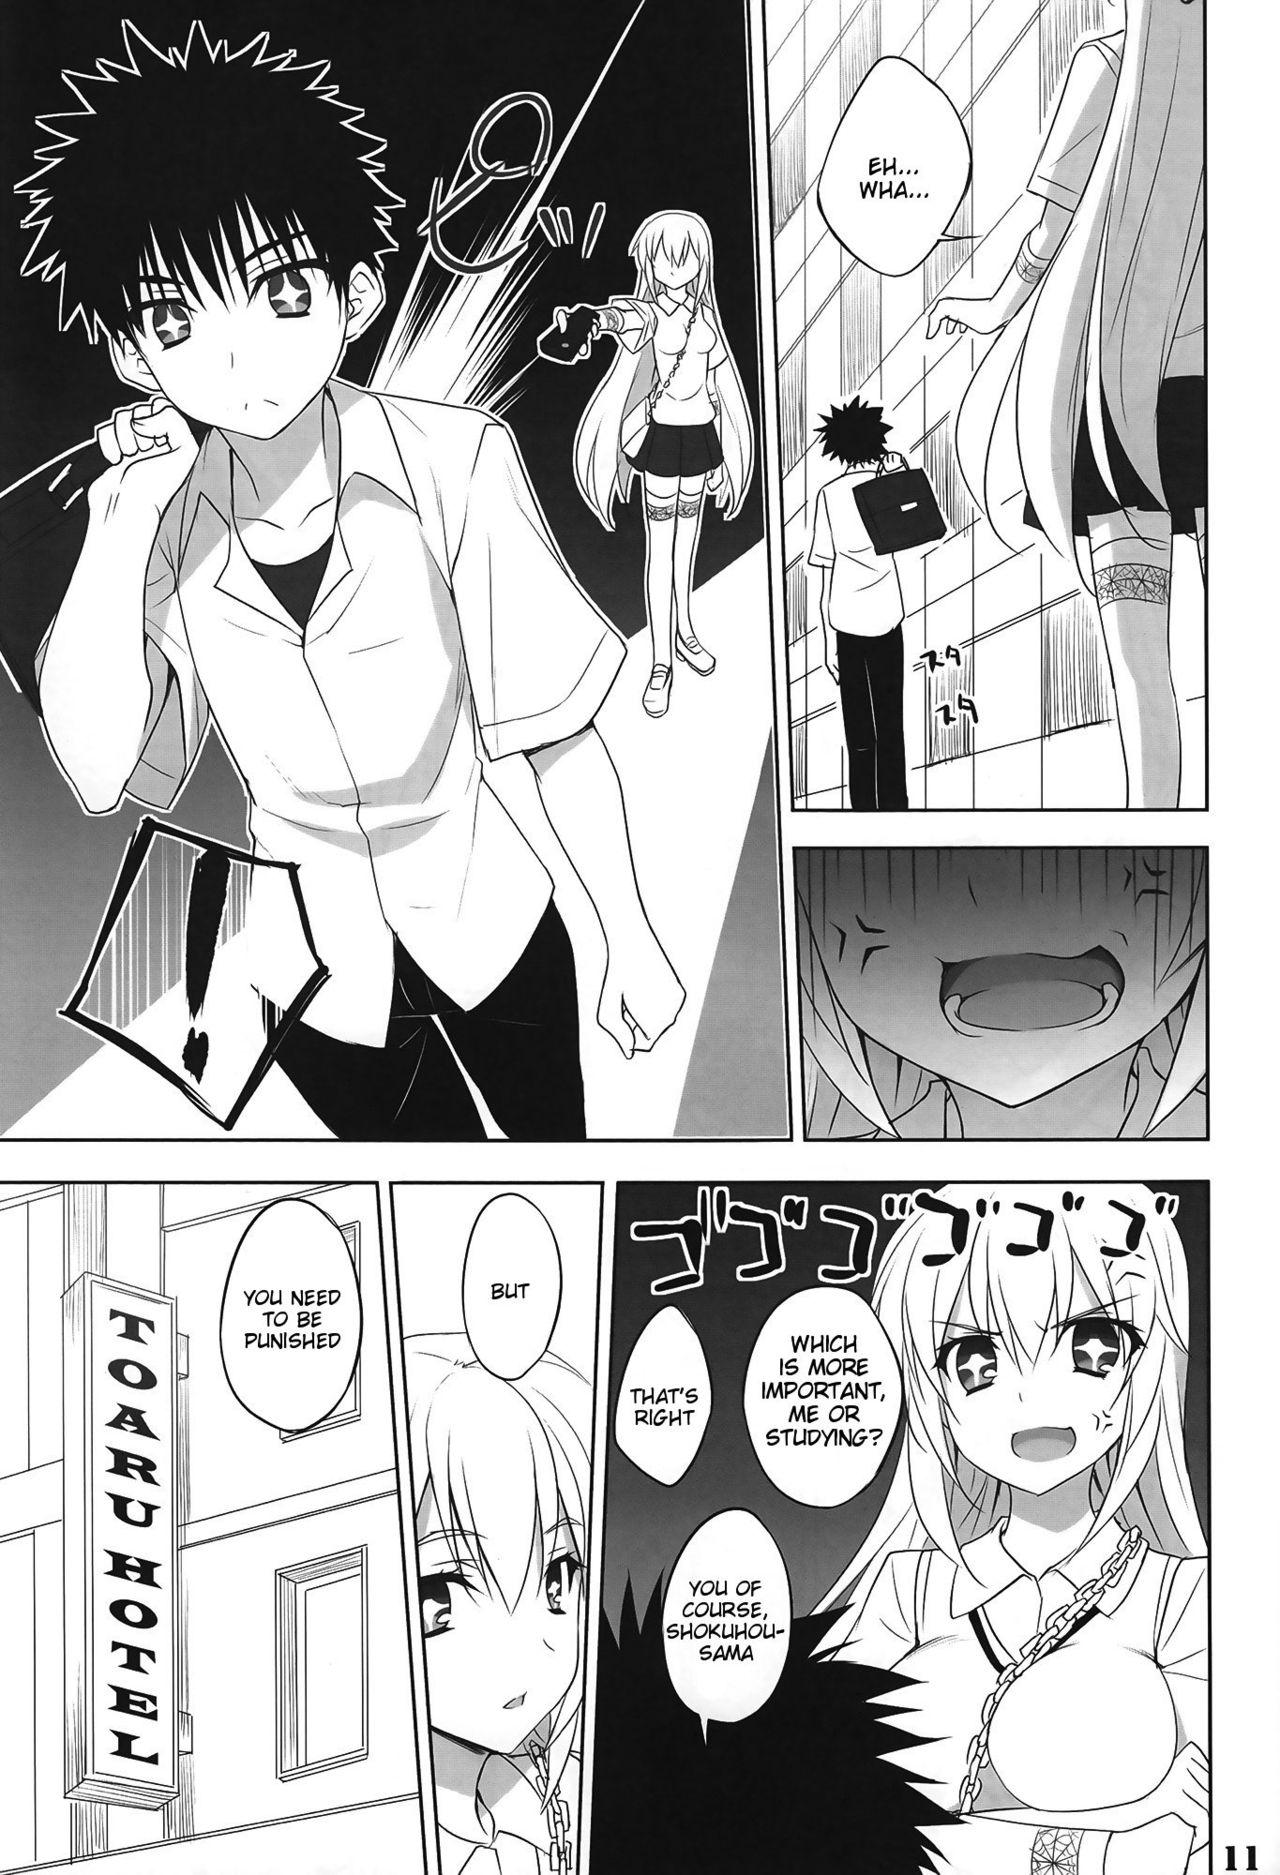 Analfucking Toaru Shokuhou no Frustration - Toaru kagaku no railgun Free Blow Job - Page 10